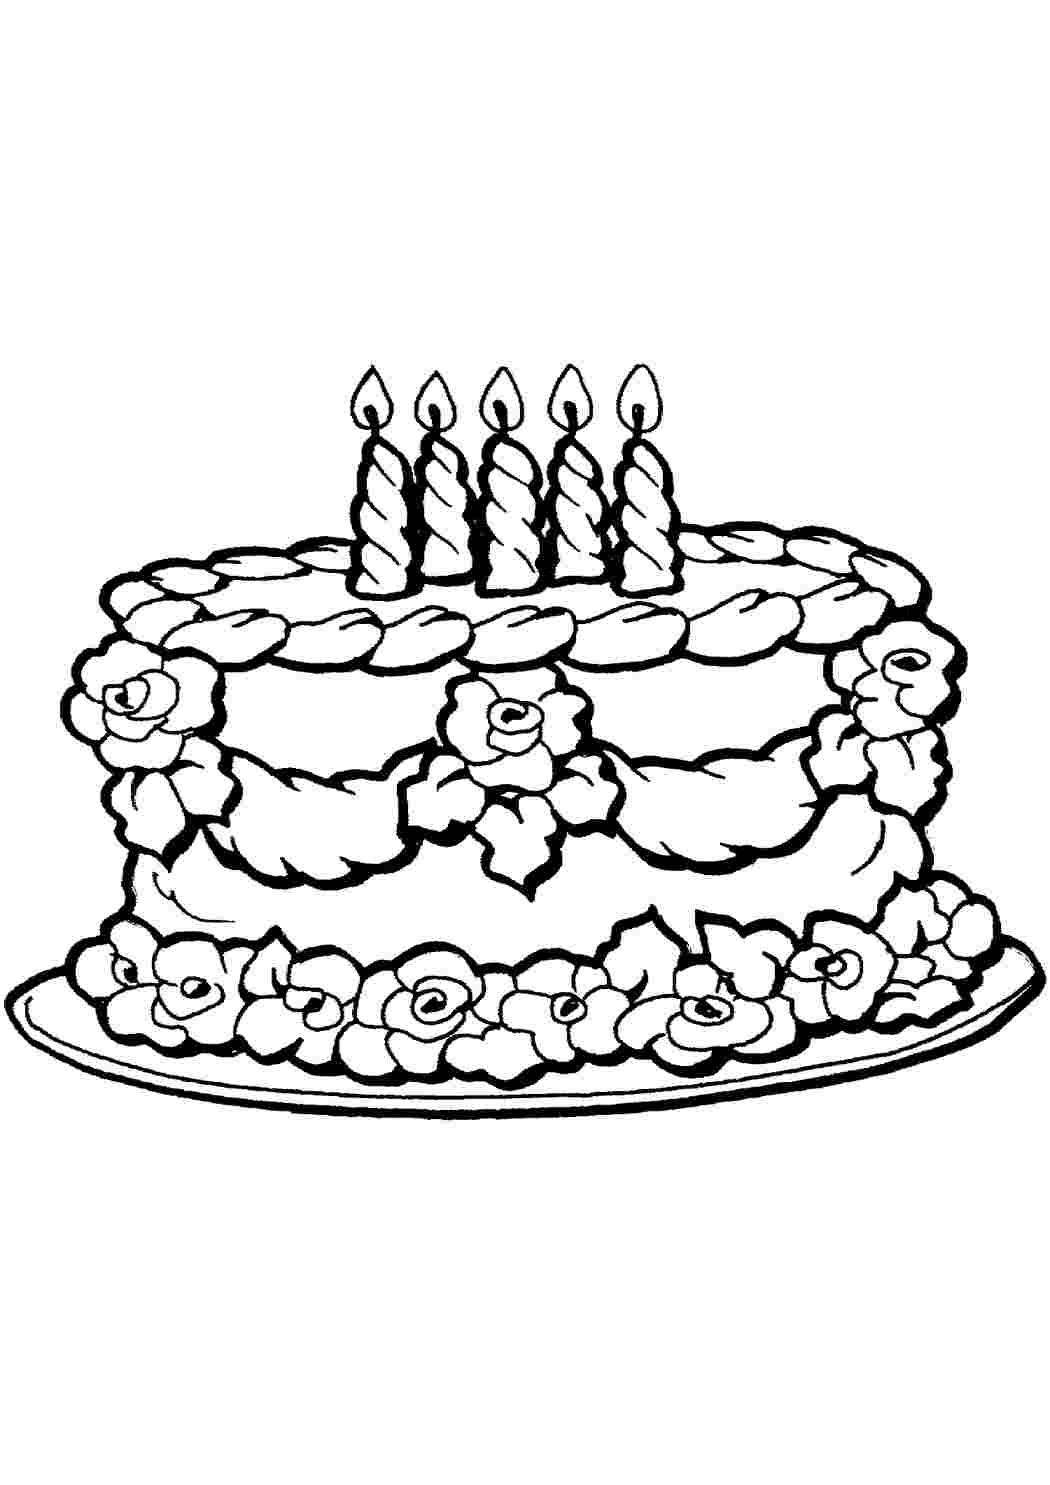 Тортик раскраска для бабушки на день рождения